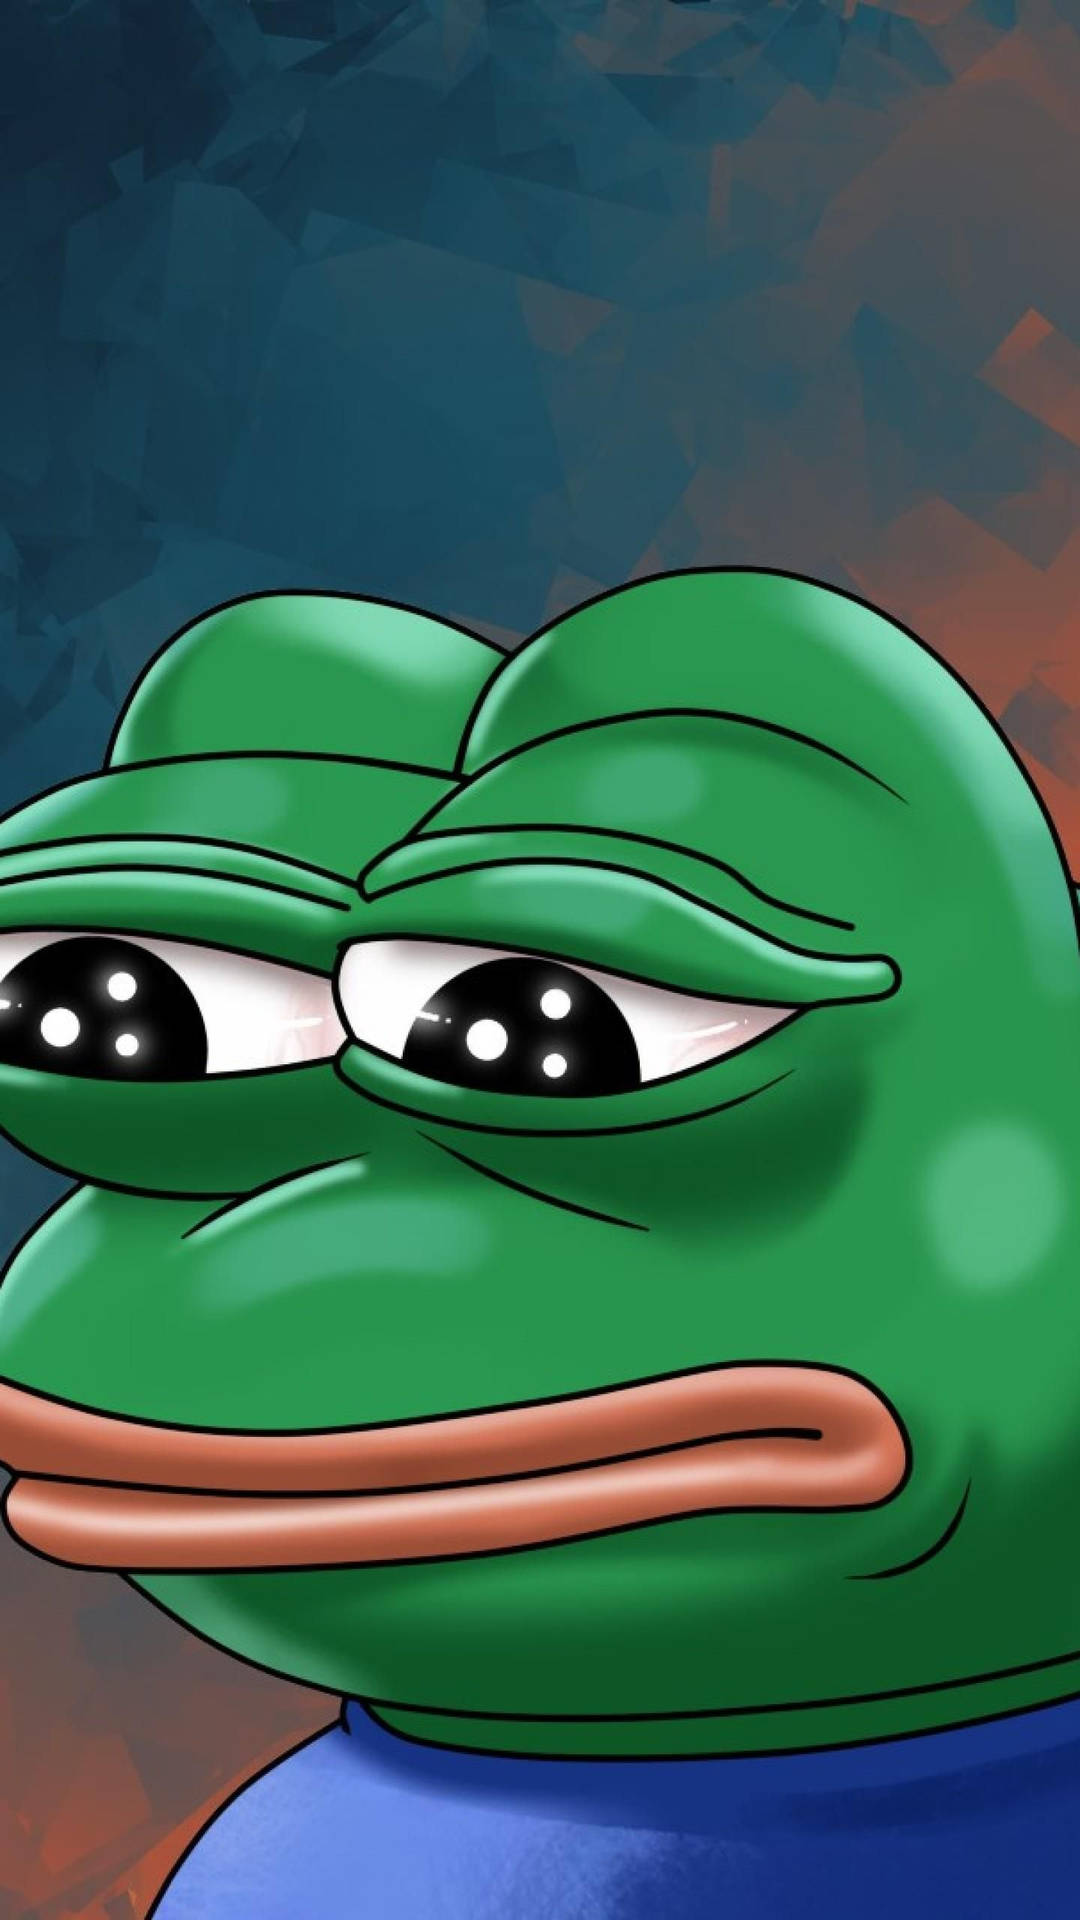 Pepe The Frog Digital Art Wallpaper